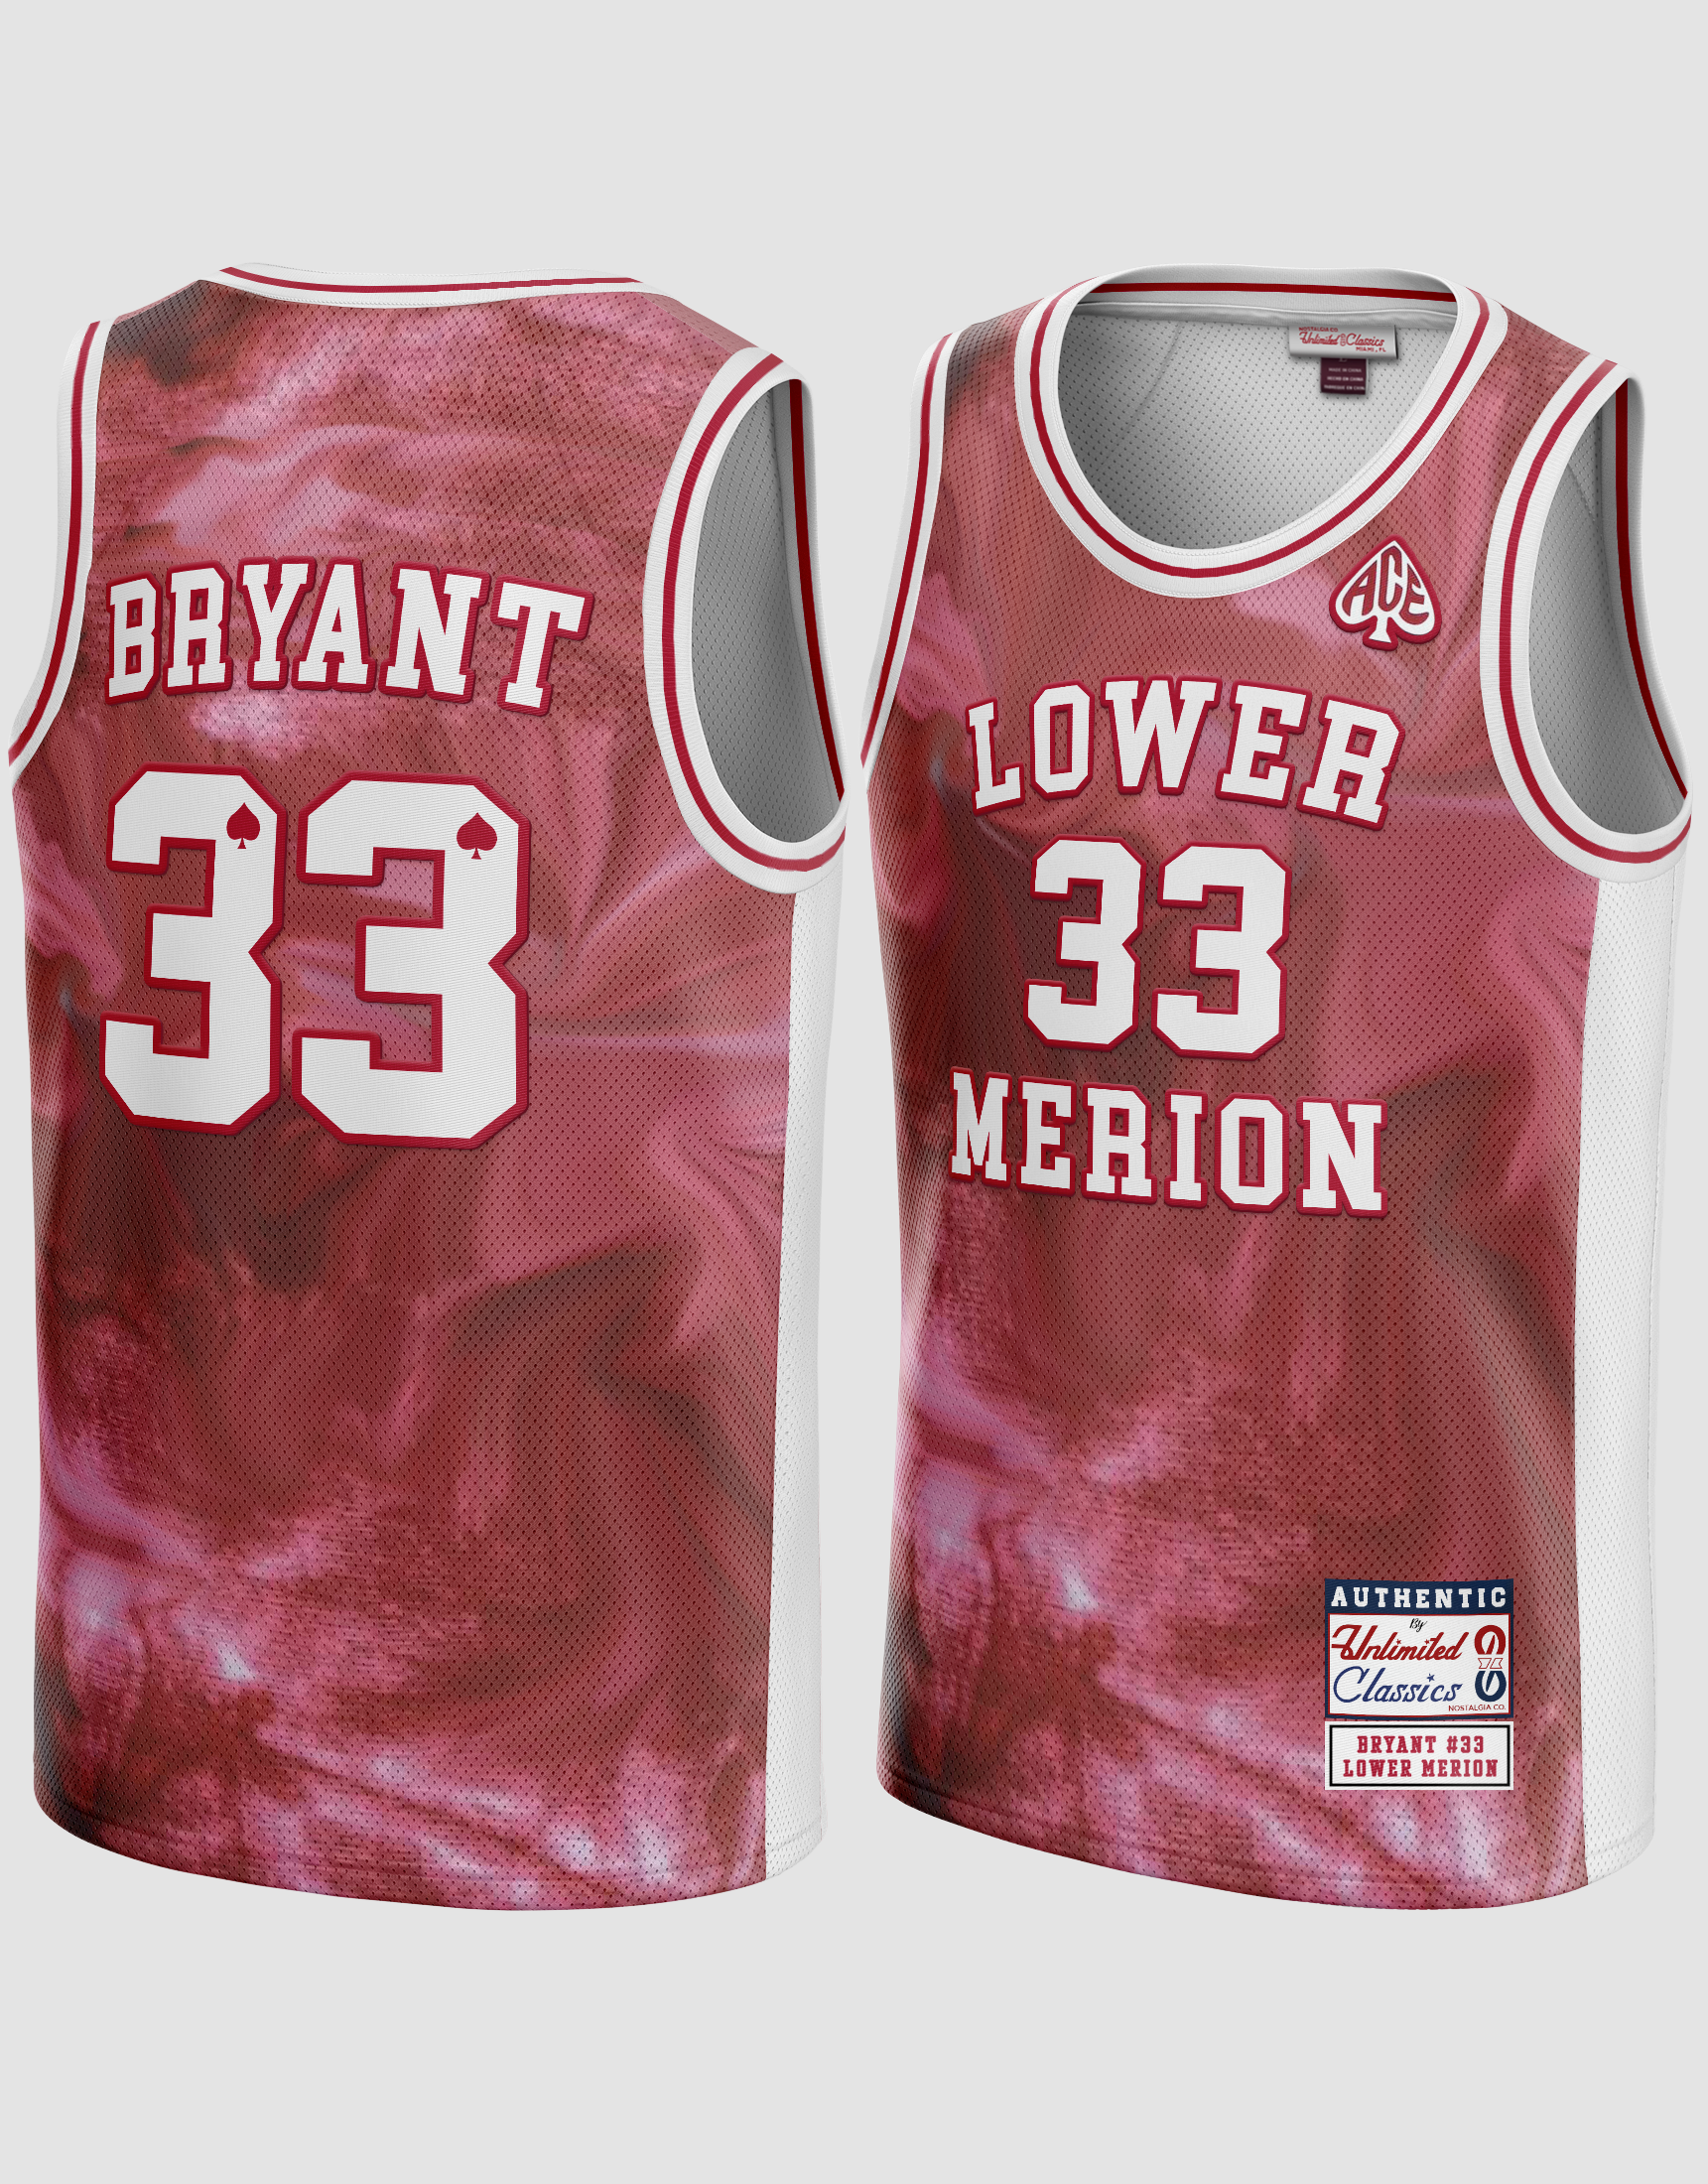 Kobe Bryant's high school jersey returned for Lower Merion